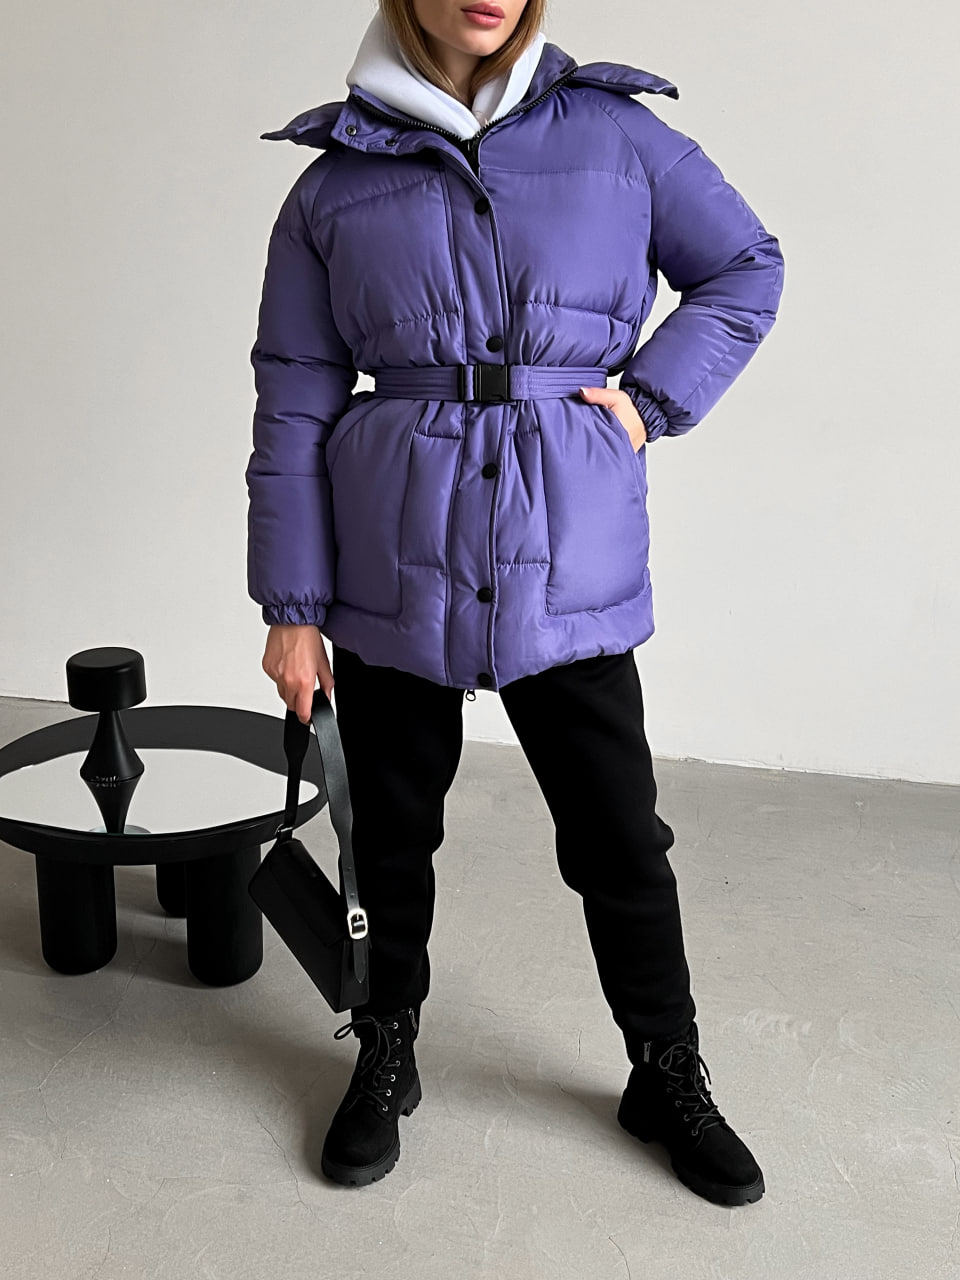 Жіноча зимова куртка-пуховик Reload Elly фіолетова / Зимовий пуховик оверсайз стильний теплий - Фото 4